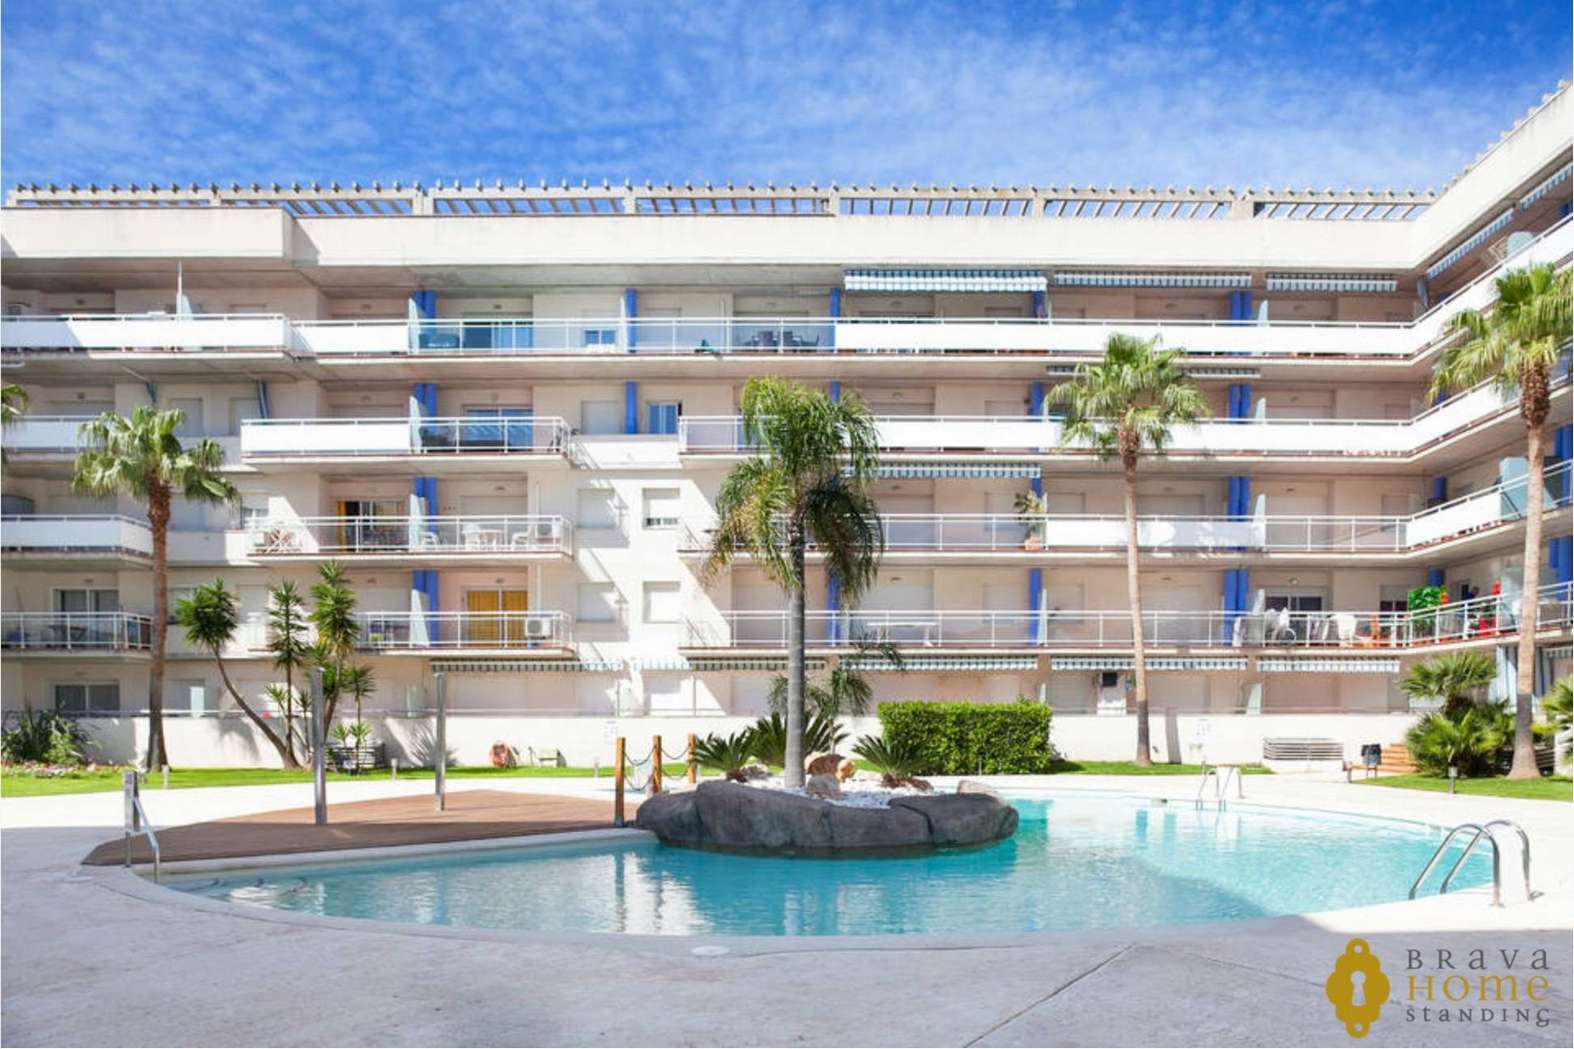 Bonito apartamento con terraza y piscina en venta en Santa Margarita